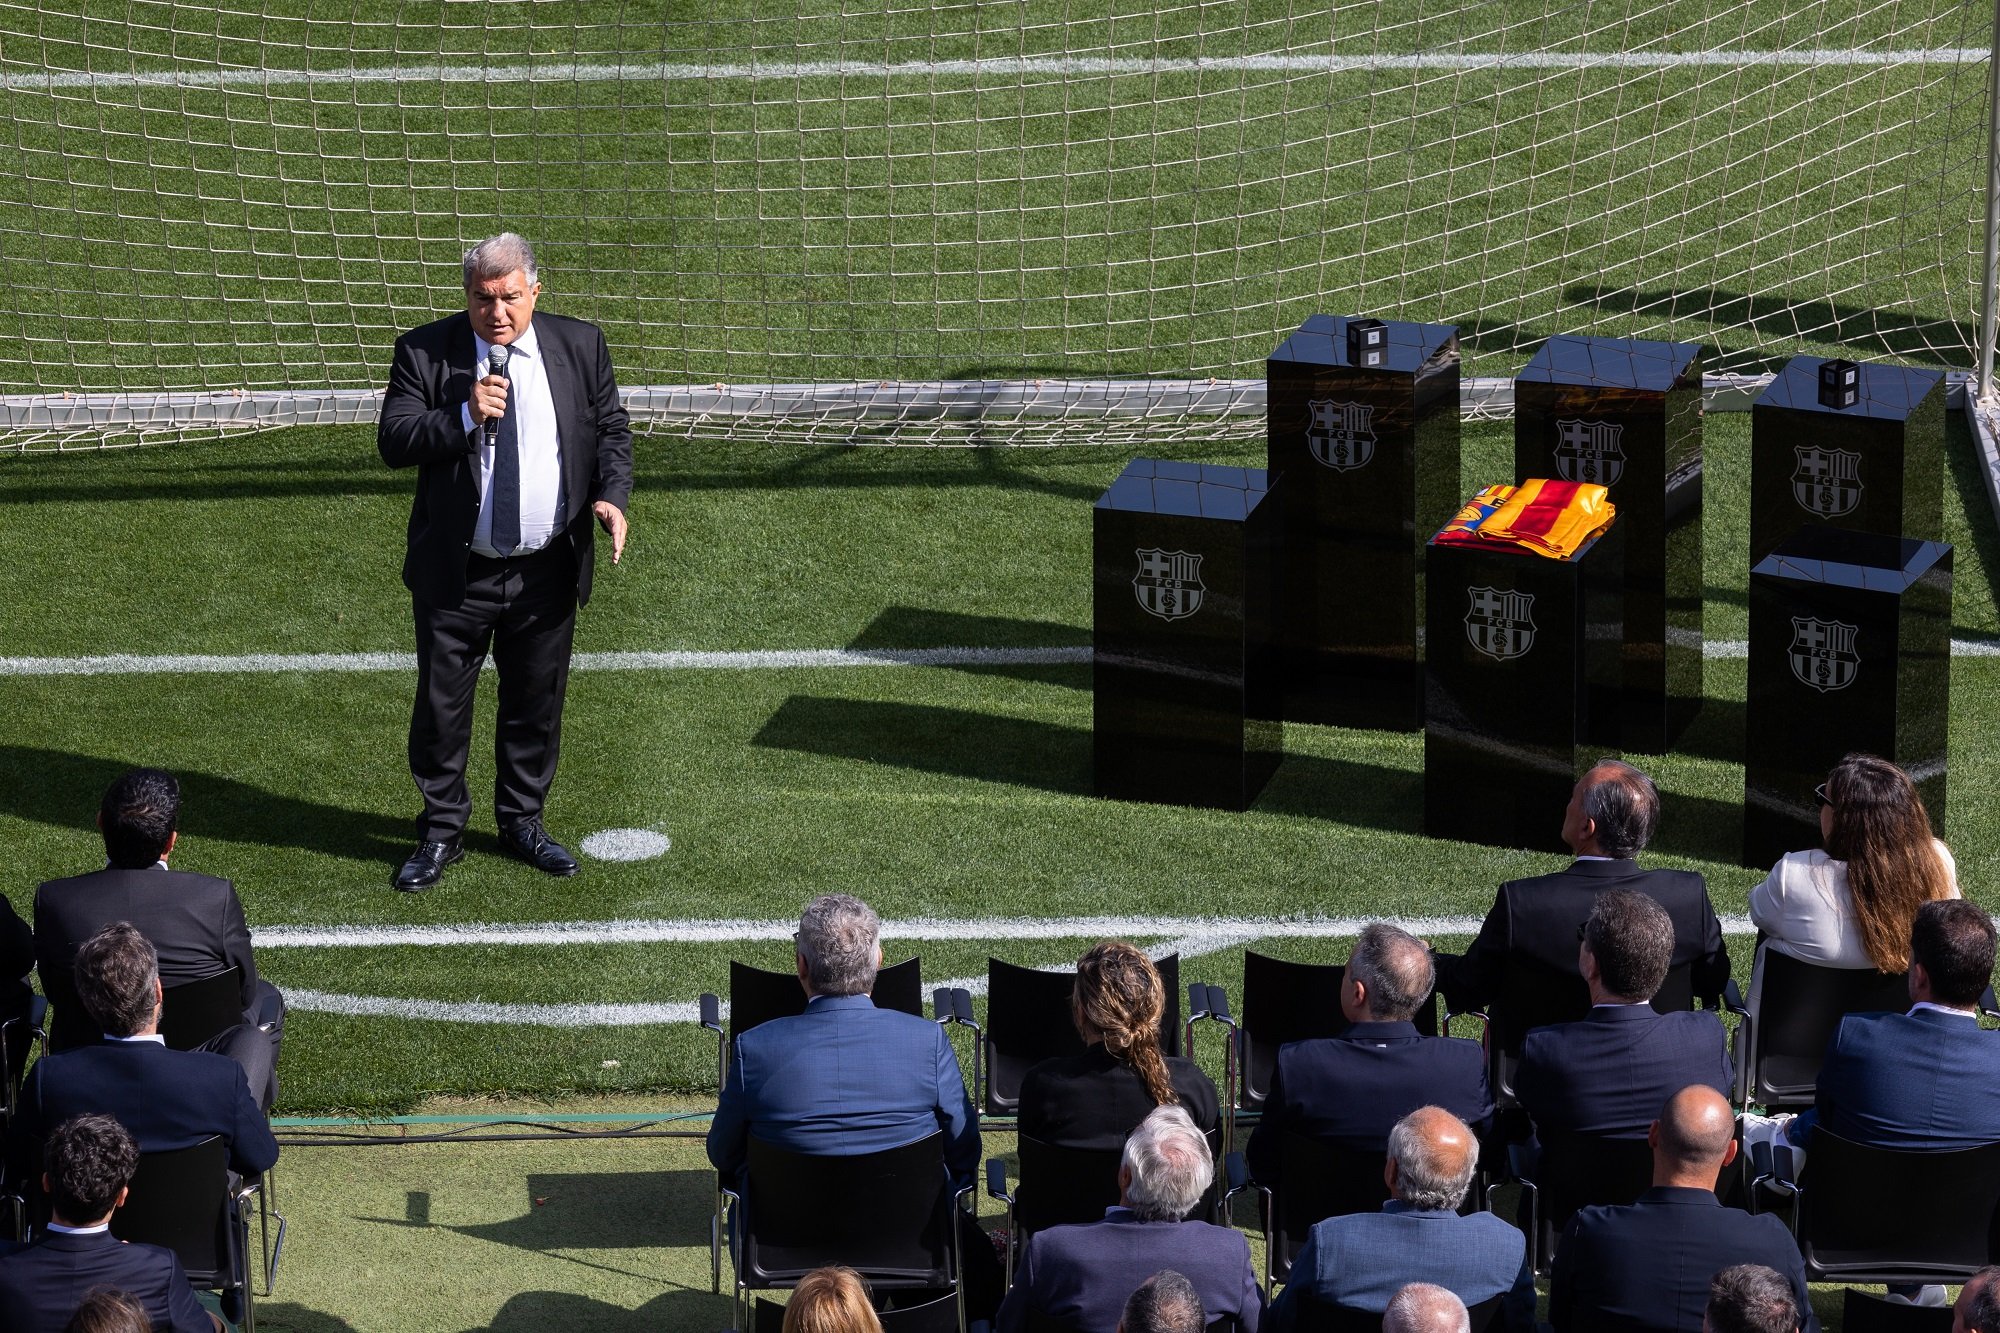 70 millones para decir adiós al Barça, Joan Laporta acepta, pero falta el "sí" del jugador